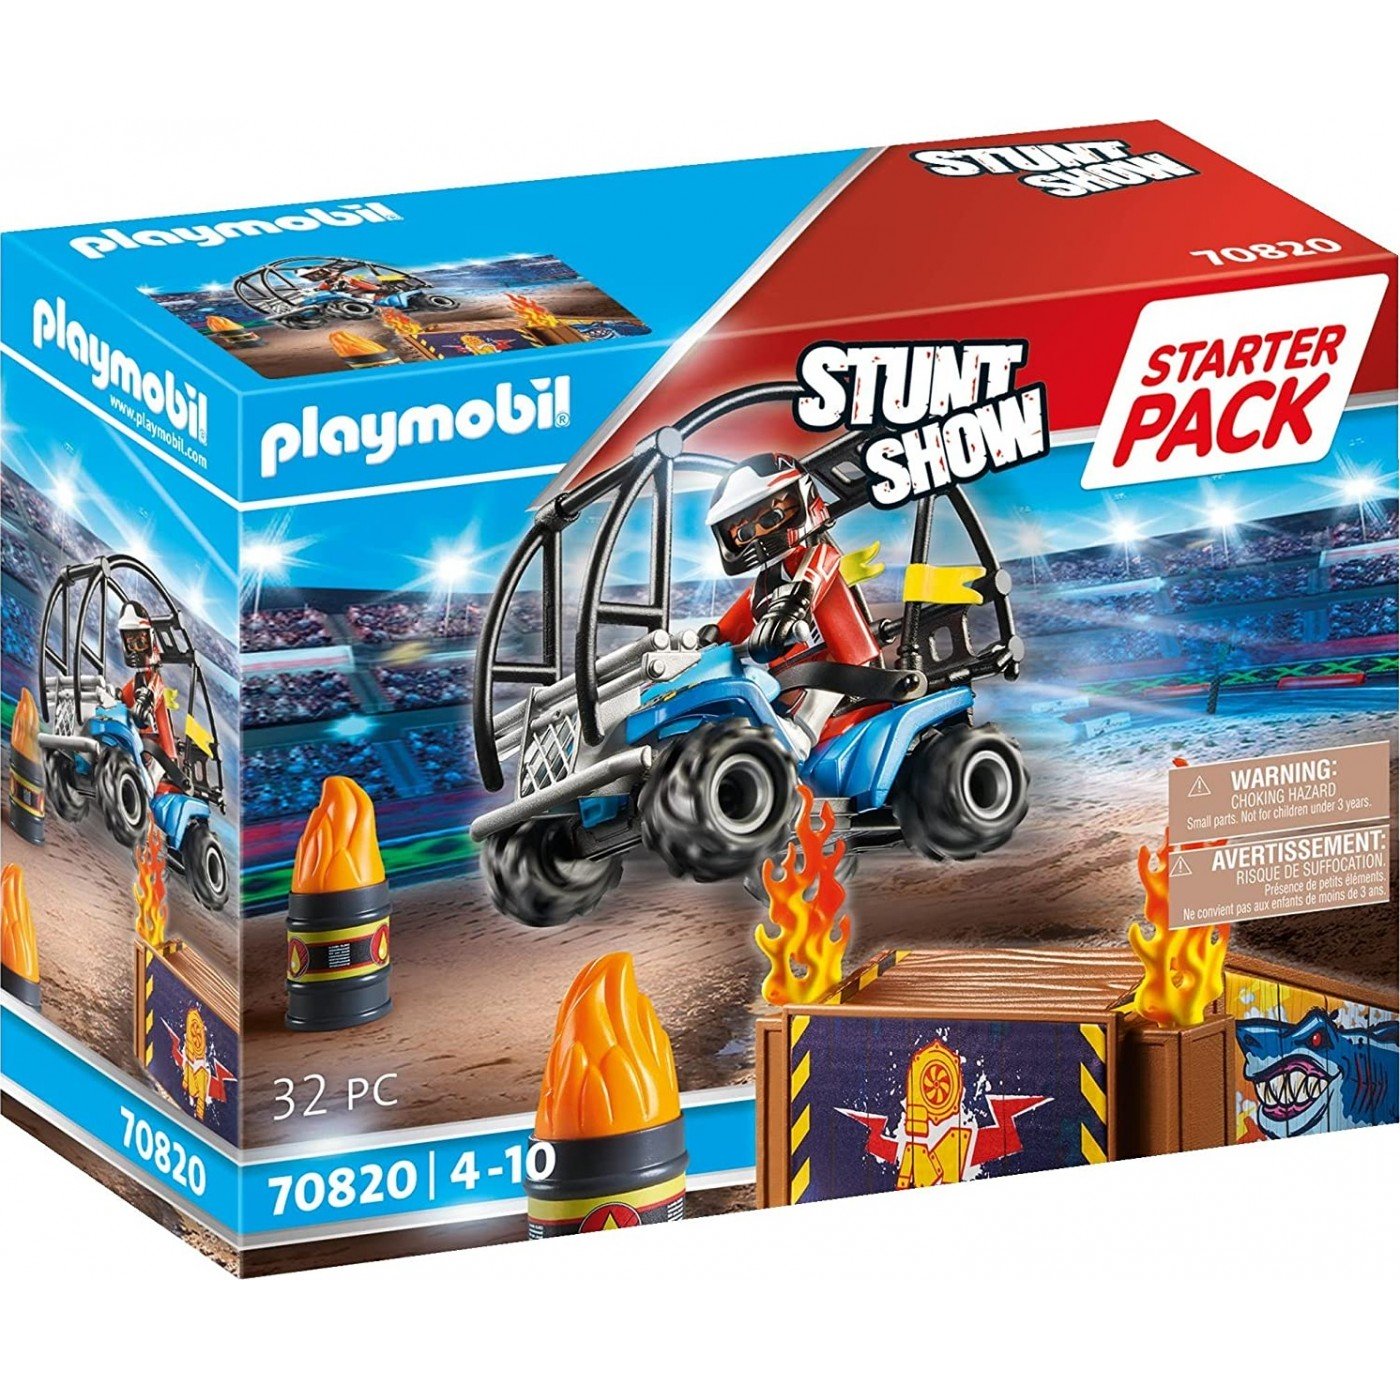 Playmobil - Starter Pack Stunt Show (70820)